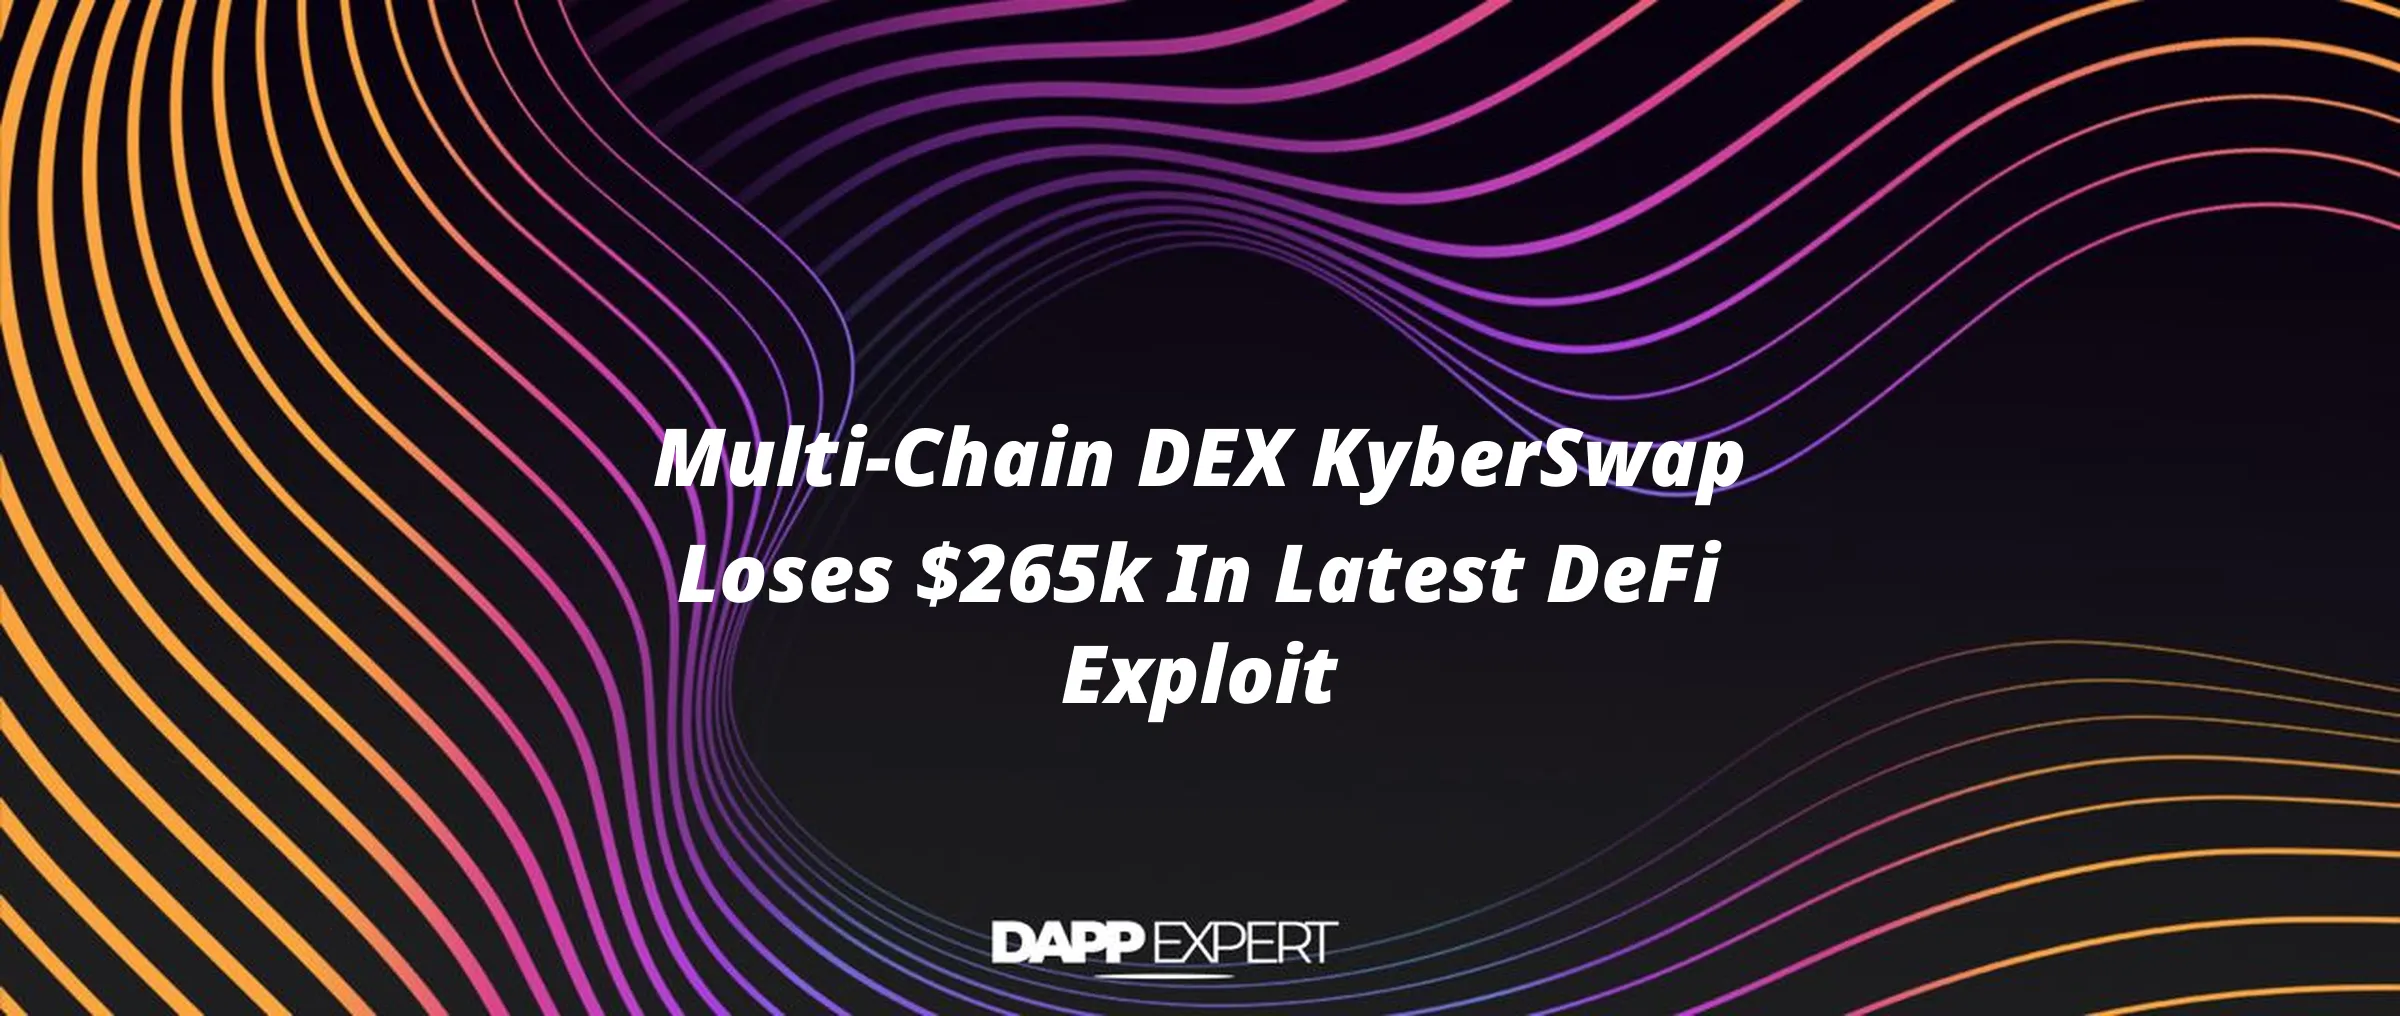 Multi-Chain DEX KyberSwap Loses $265k In Latest DeFi Exploit